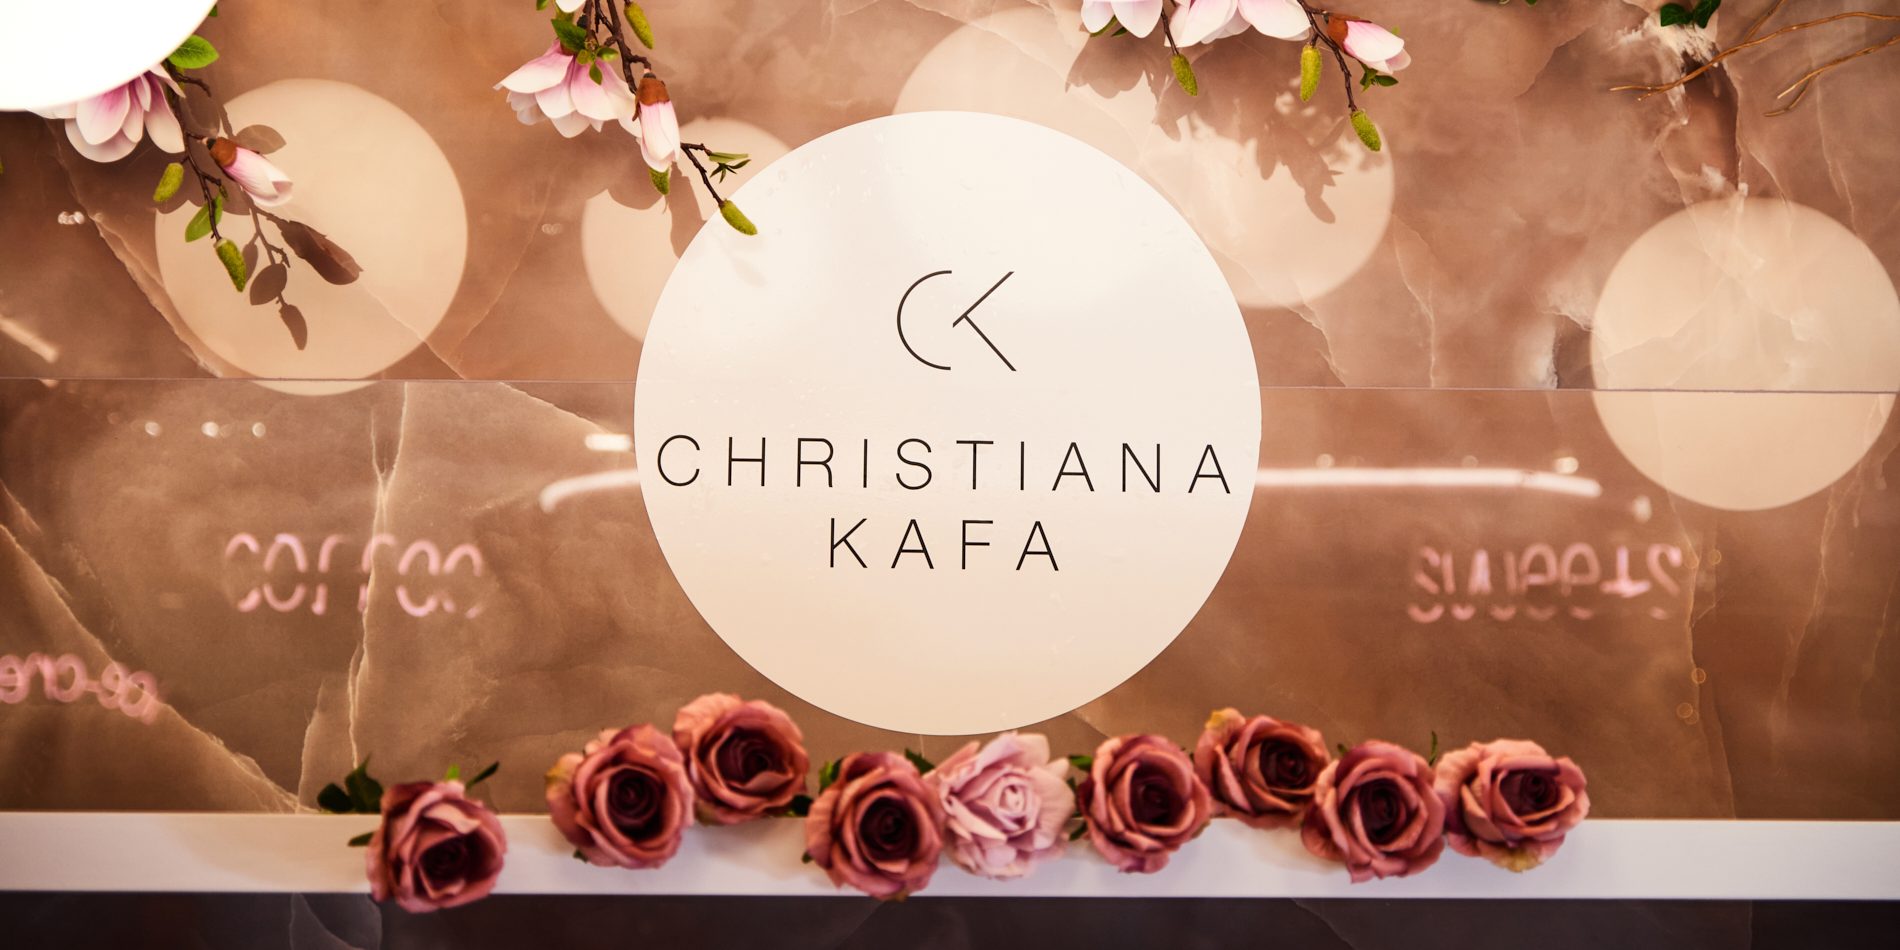 Η σχεδιάστρια κοσμημάτων Christiana Kafa παρουσίασε την νέα της συλλογή σε ένα μοναδικό Pop-Up Jewelry Event στη πιο διπλή ημερομηνία της χρονιάς που συναντάμε κάθε 100 χρόνια  